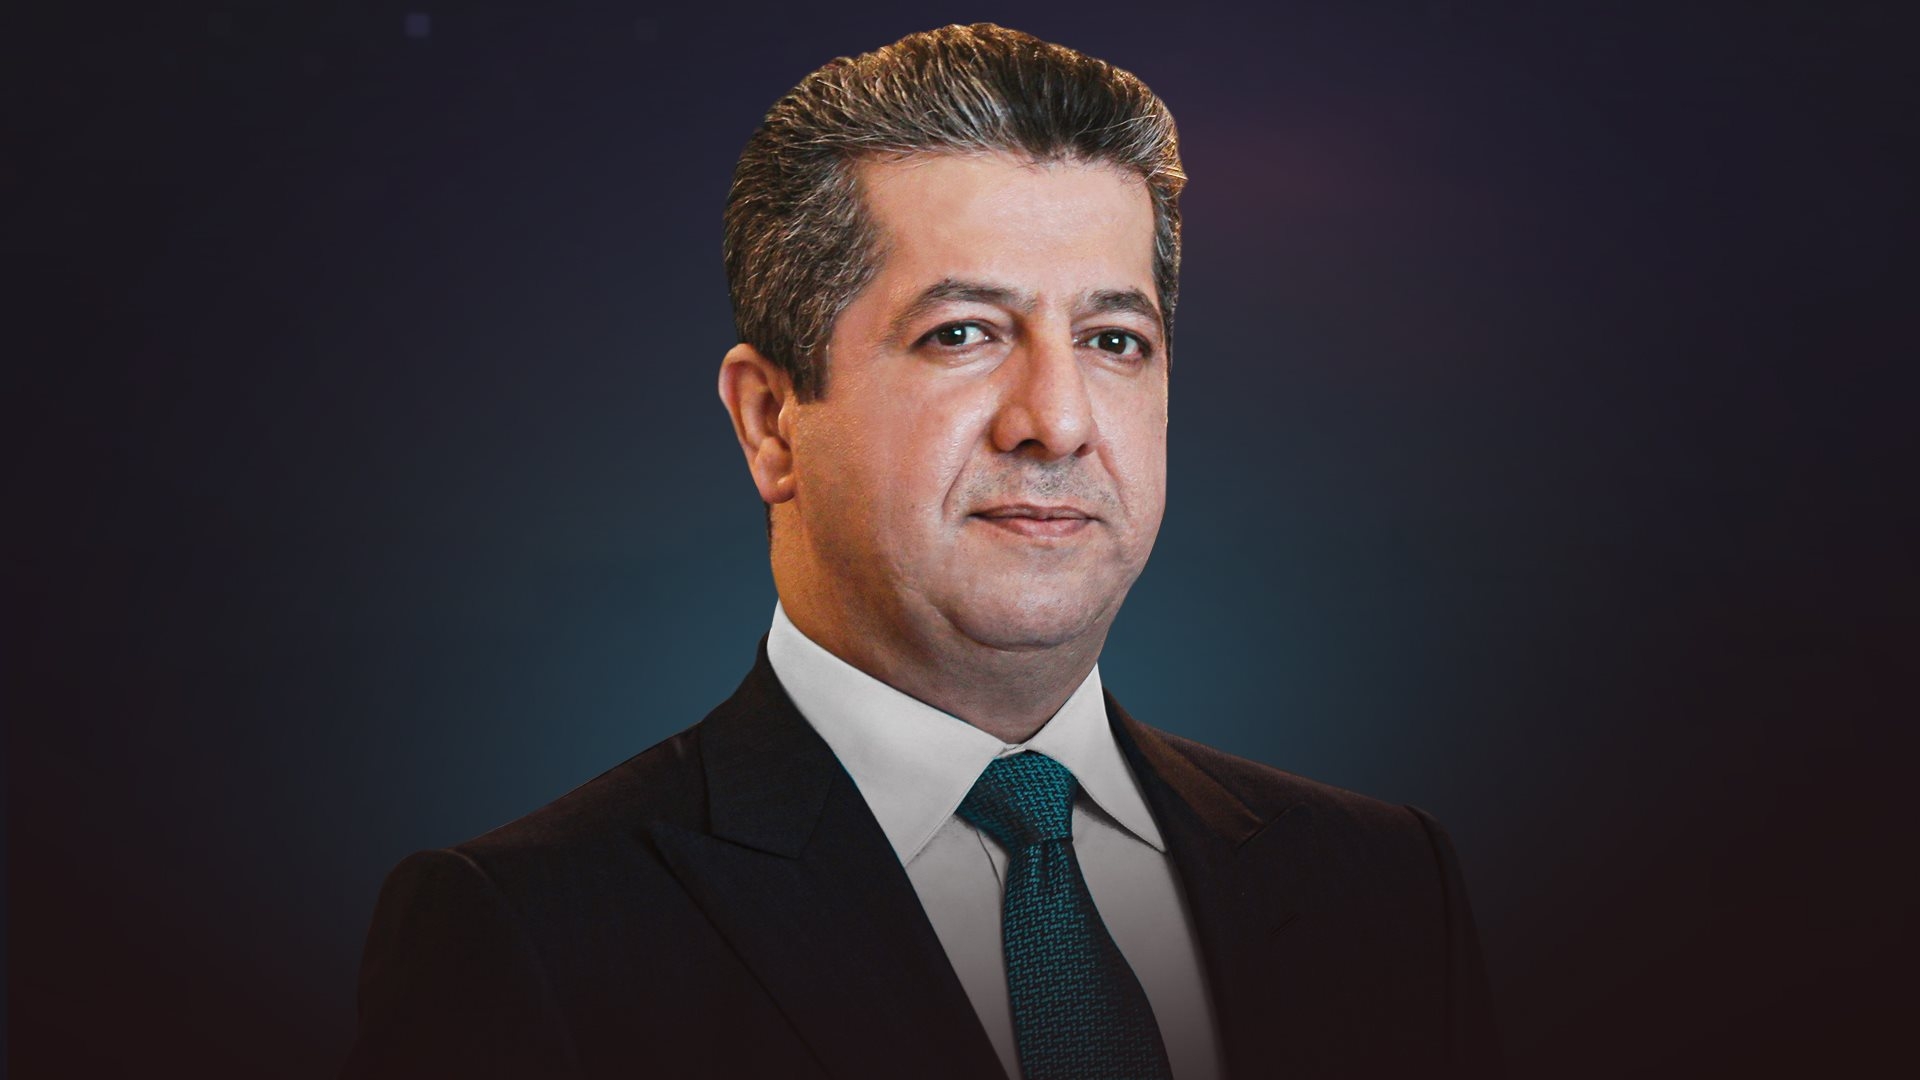 رئيس حكومة إقليم كوردستان يعود إلى أربيل